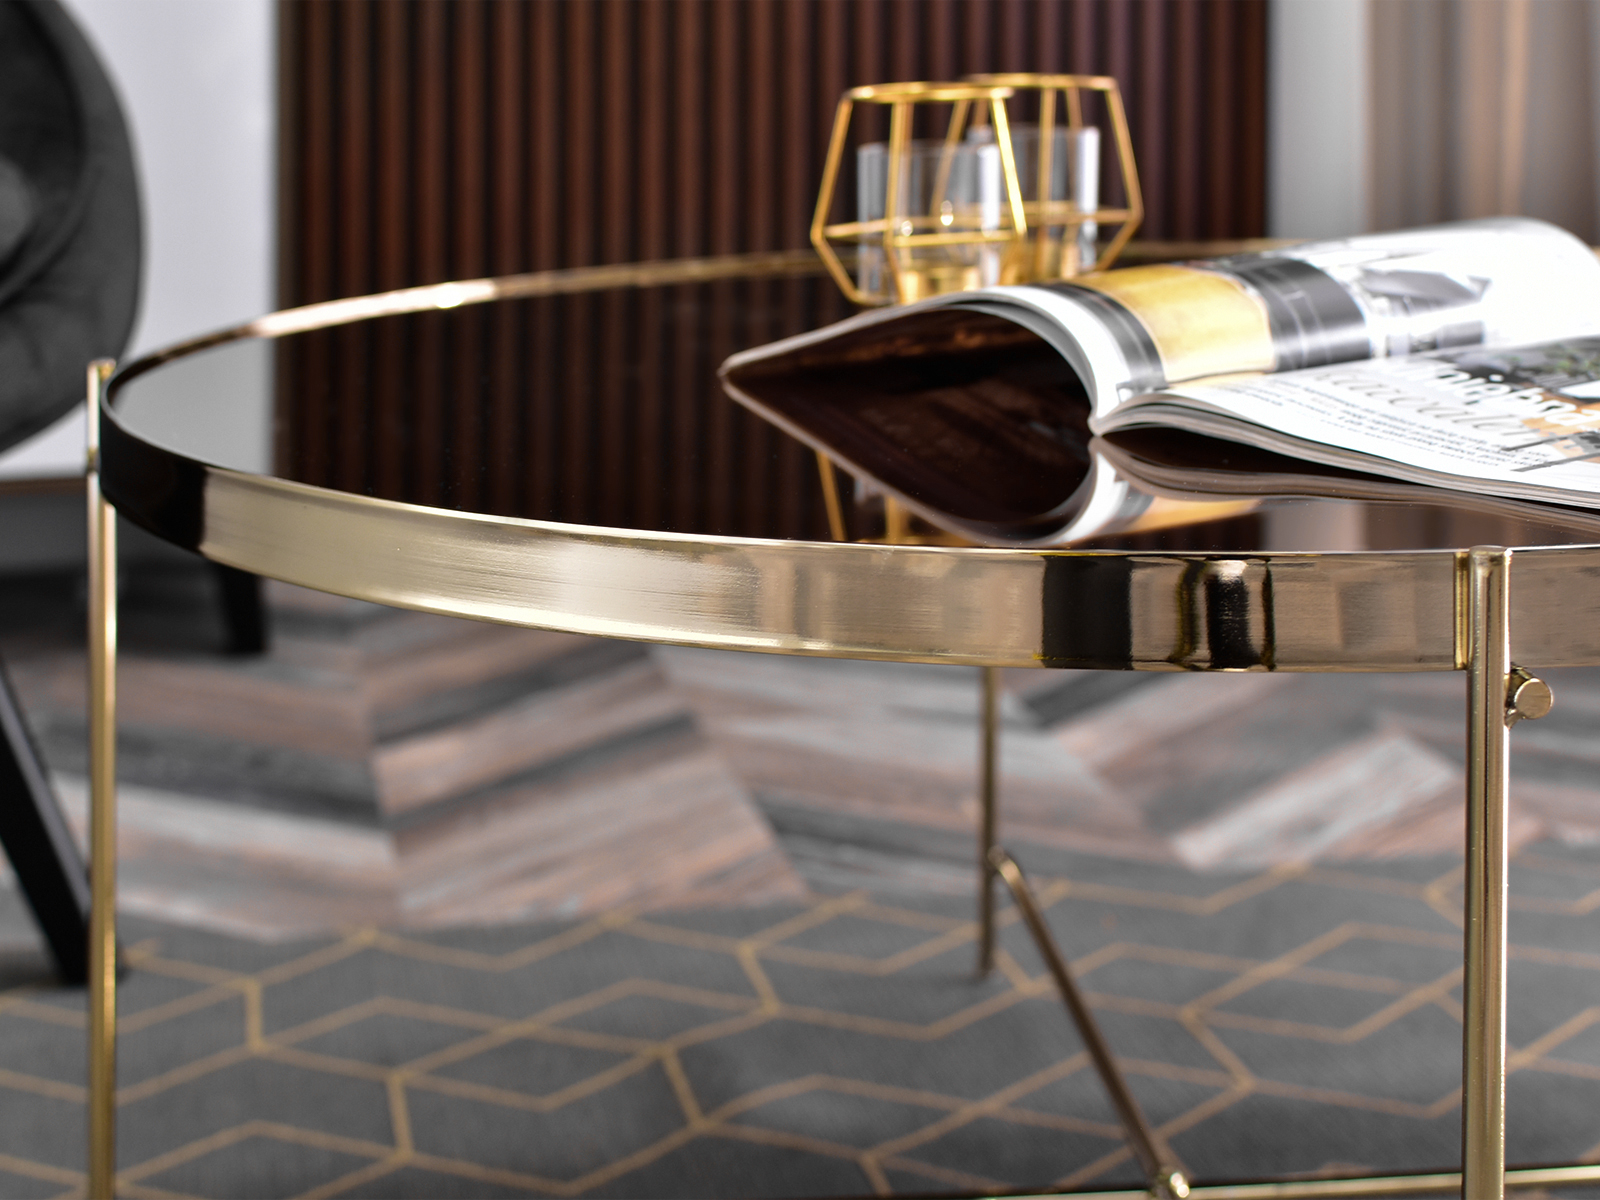 Okrągły stolik IBIA XL ZŁOTY glamour z brązowym szkłem - charakterystyczne detale